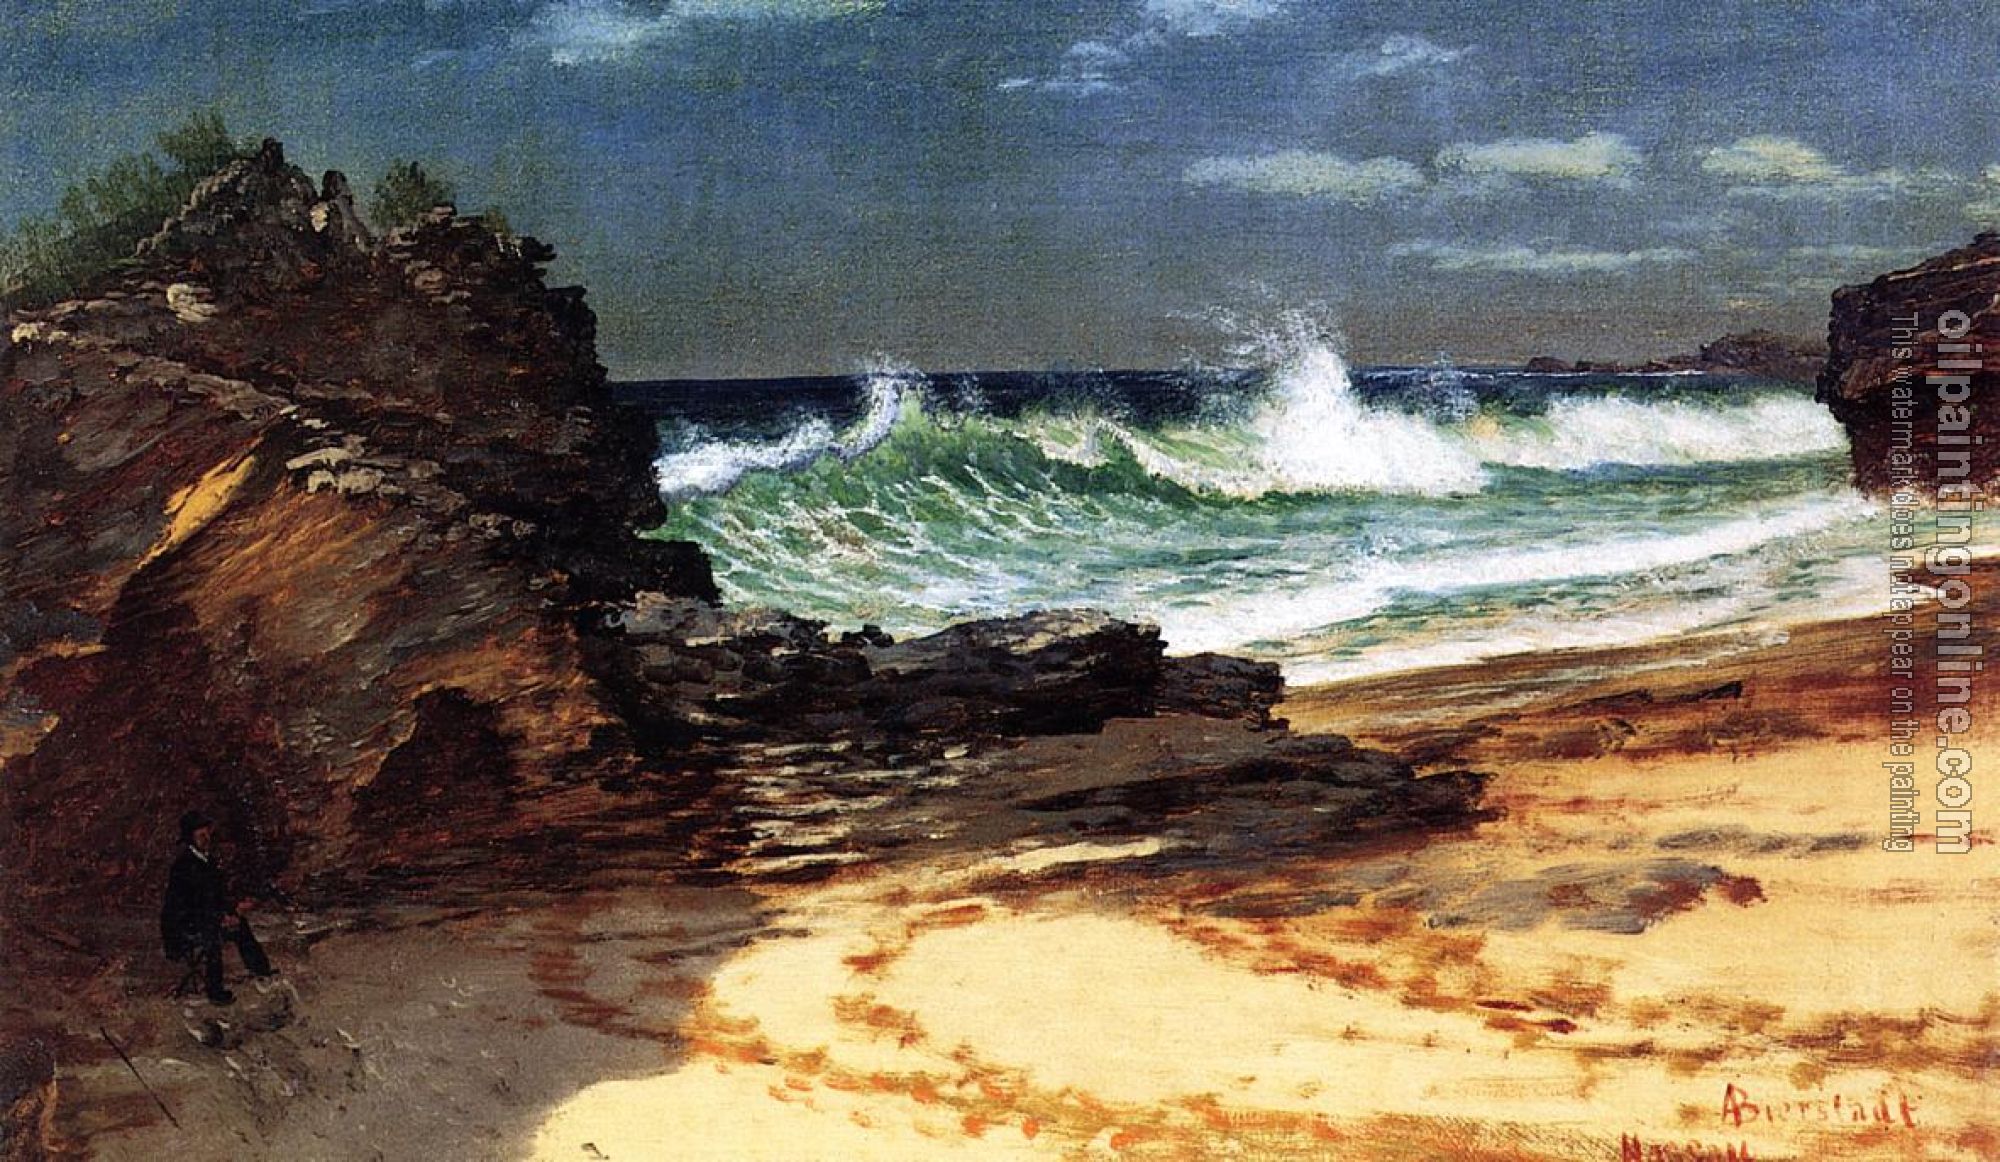 Bierstadt, Albert - Beach at Nassau